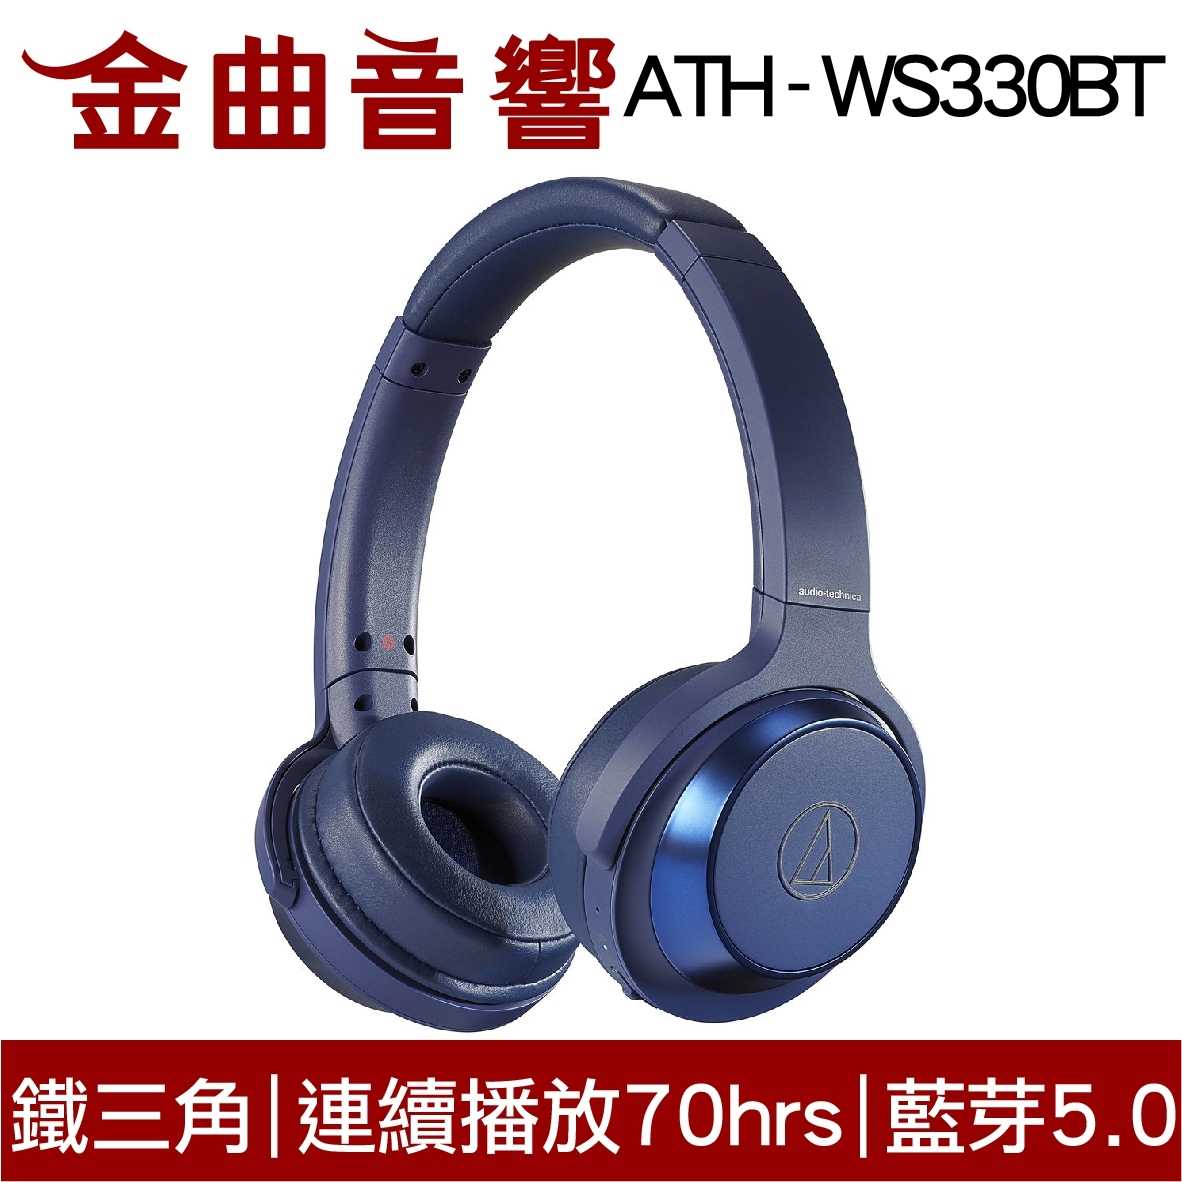 鐵三角 ATH-WS330BT 黑色 兒童耳機 大人 皆適用 無線藍牙耳機 重低音 | 金曲音響